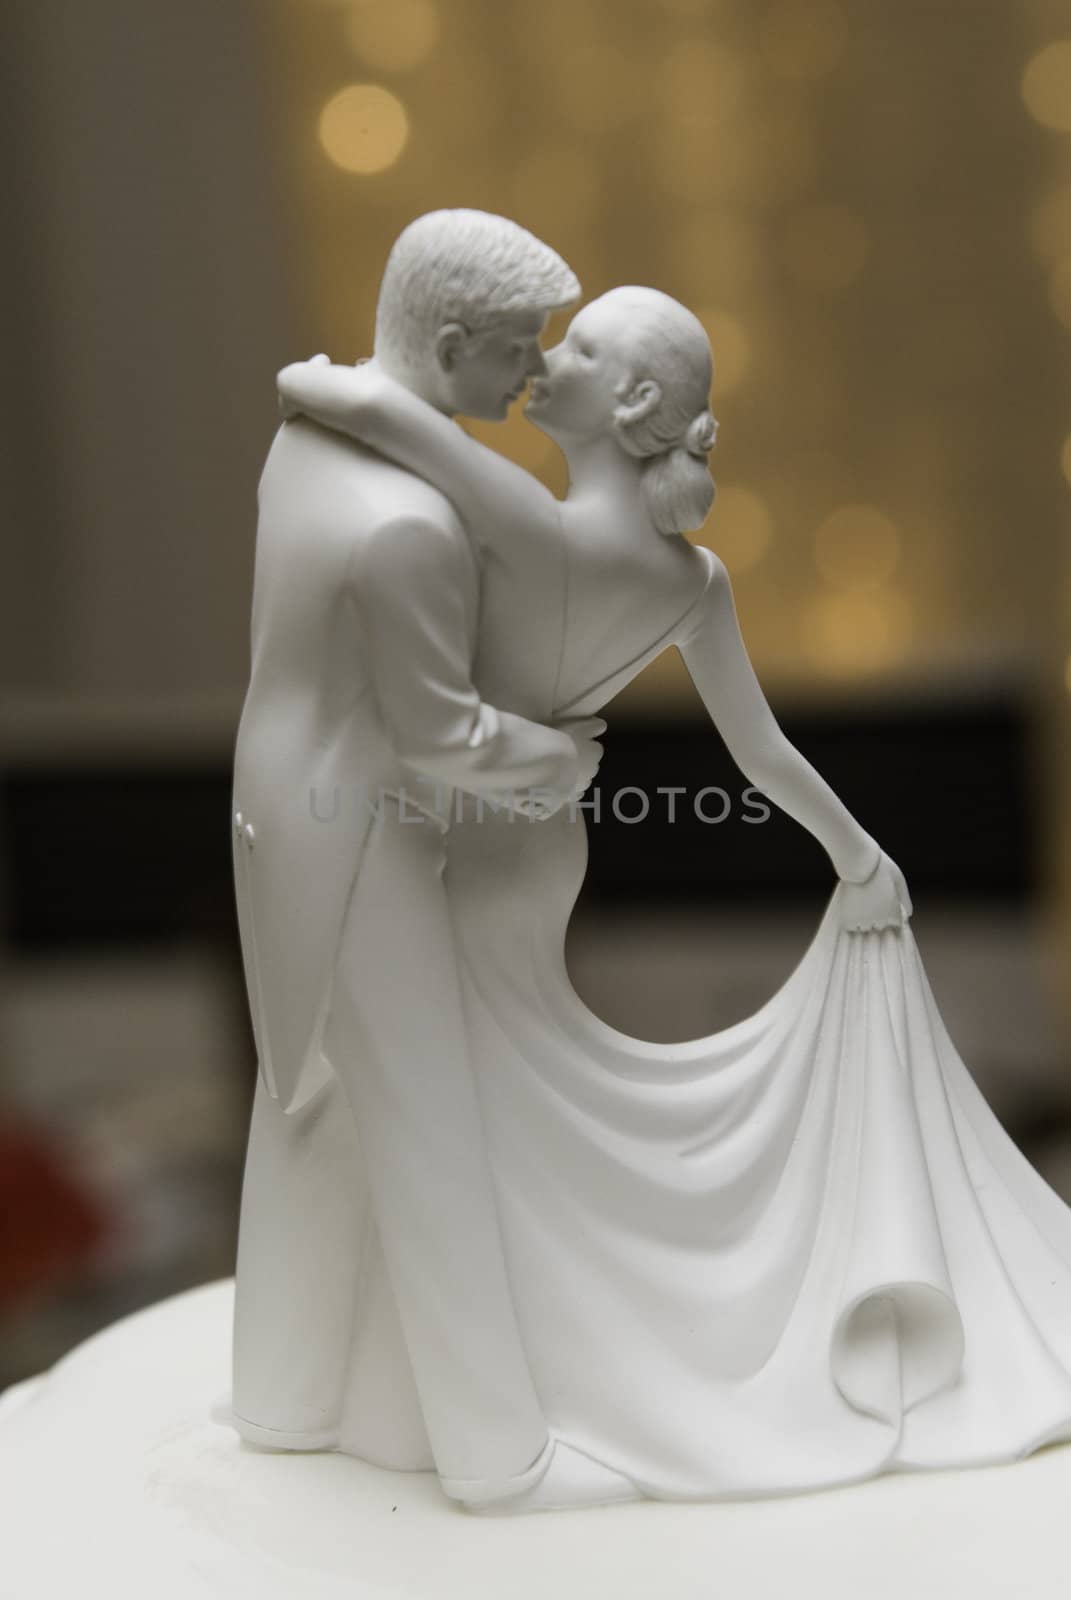 Figures on a wedding cake dancing